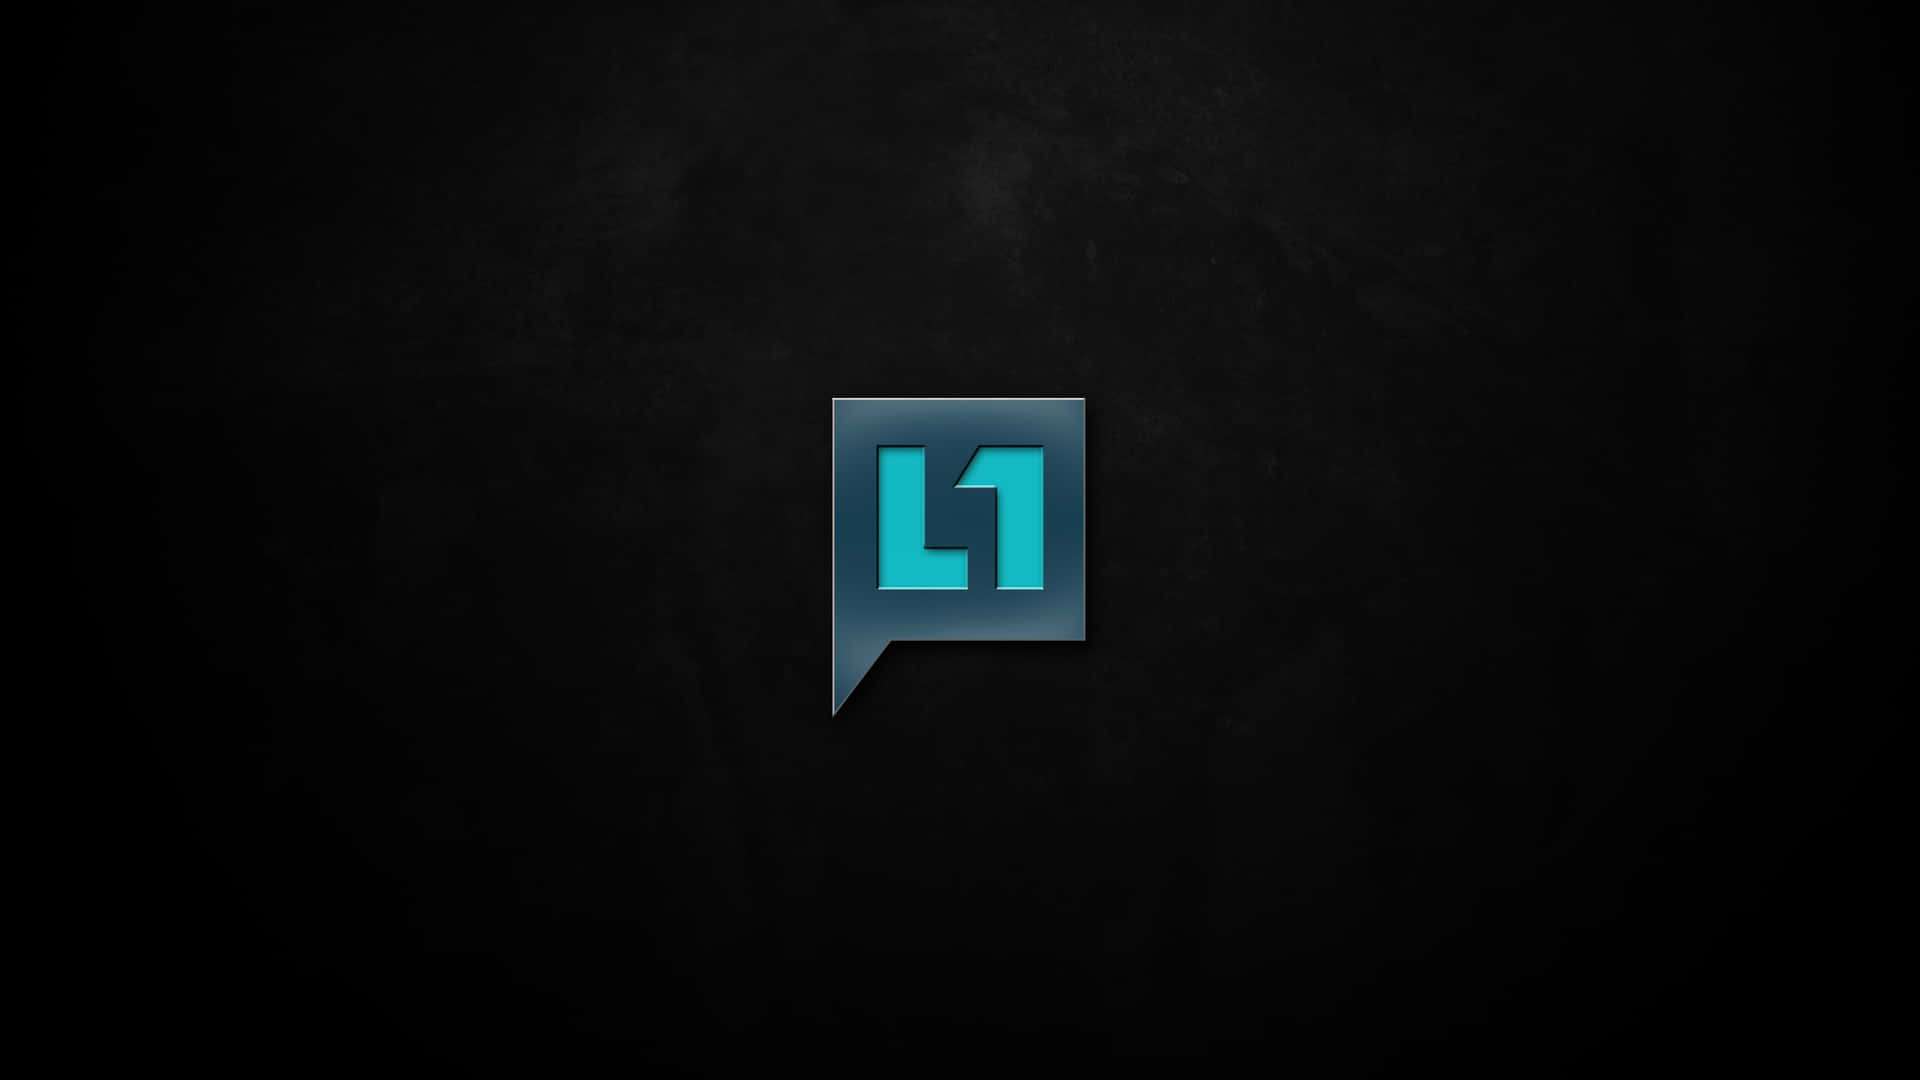 Level 1 Logo Wallpaper